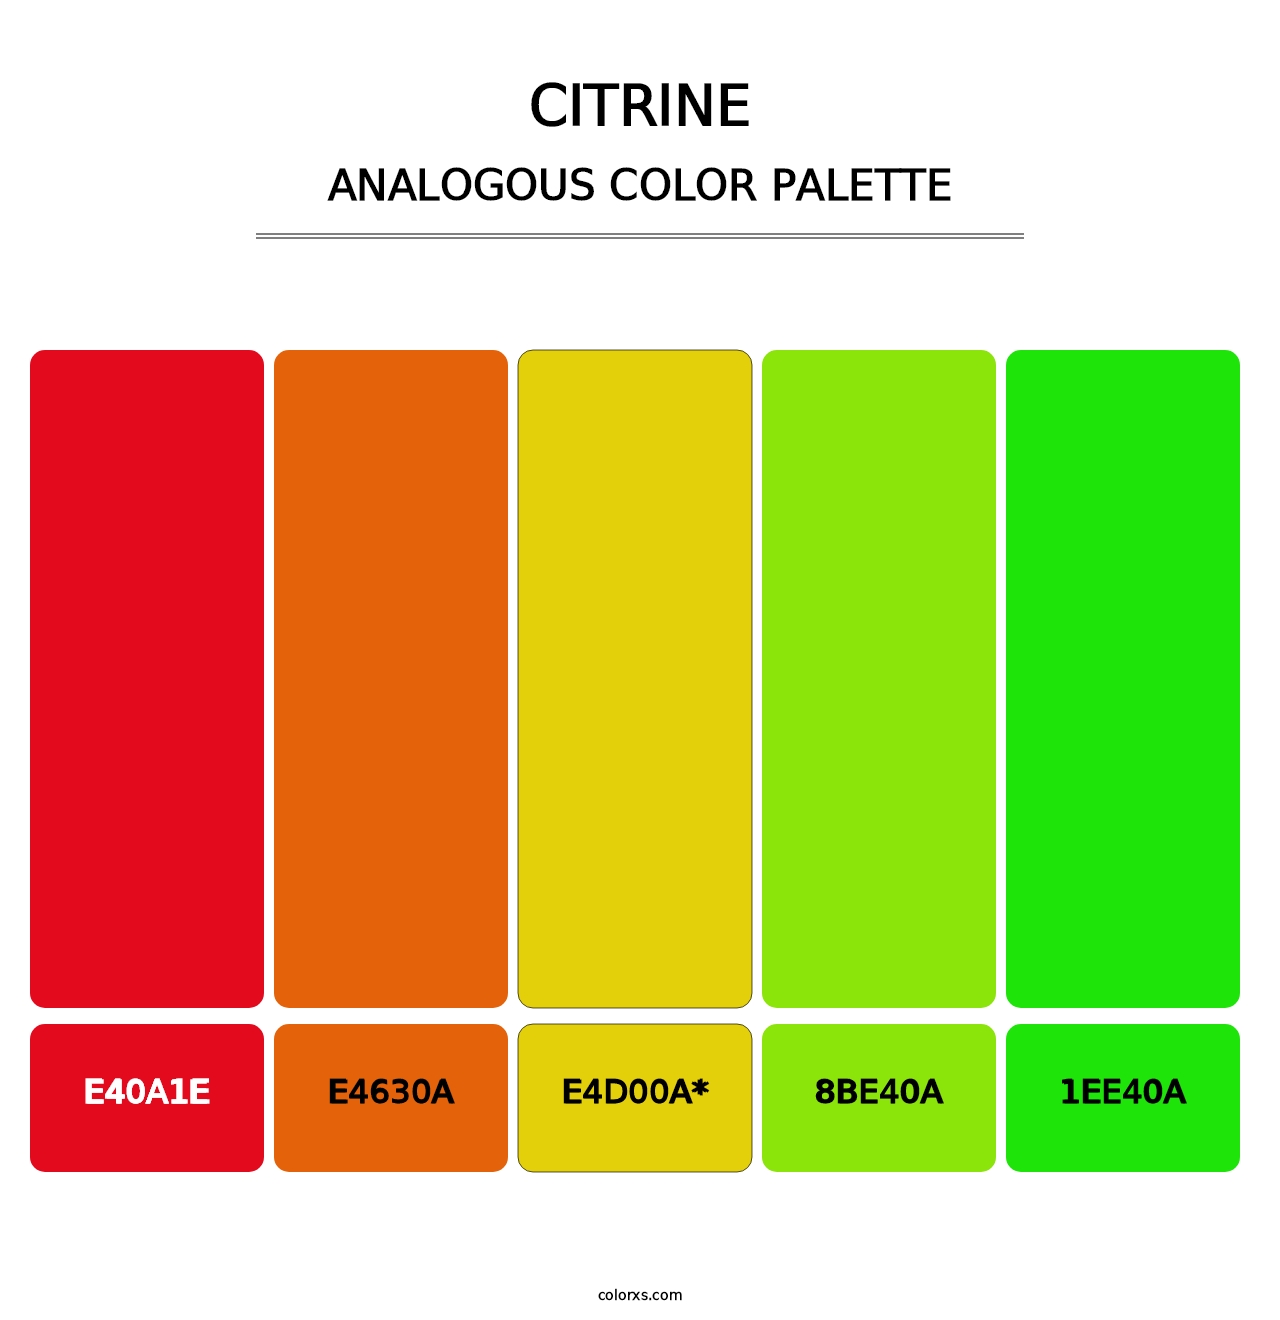 Citrine - Analogous Color Palette